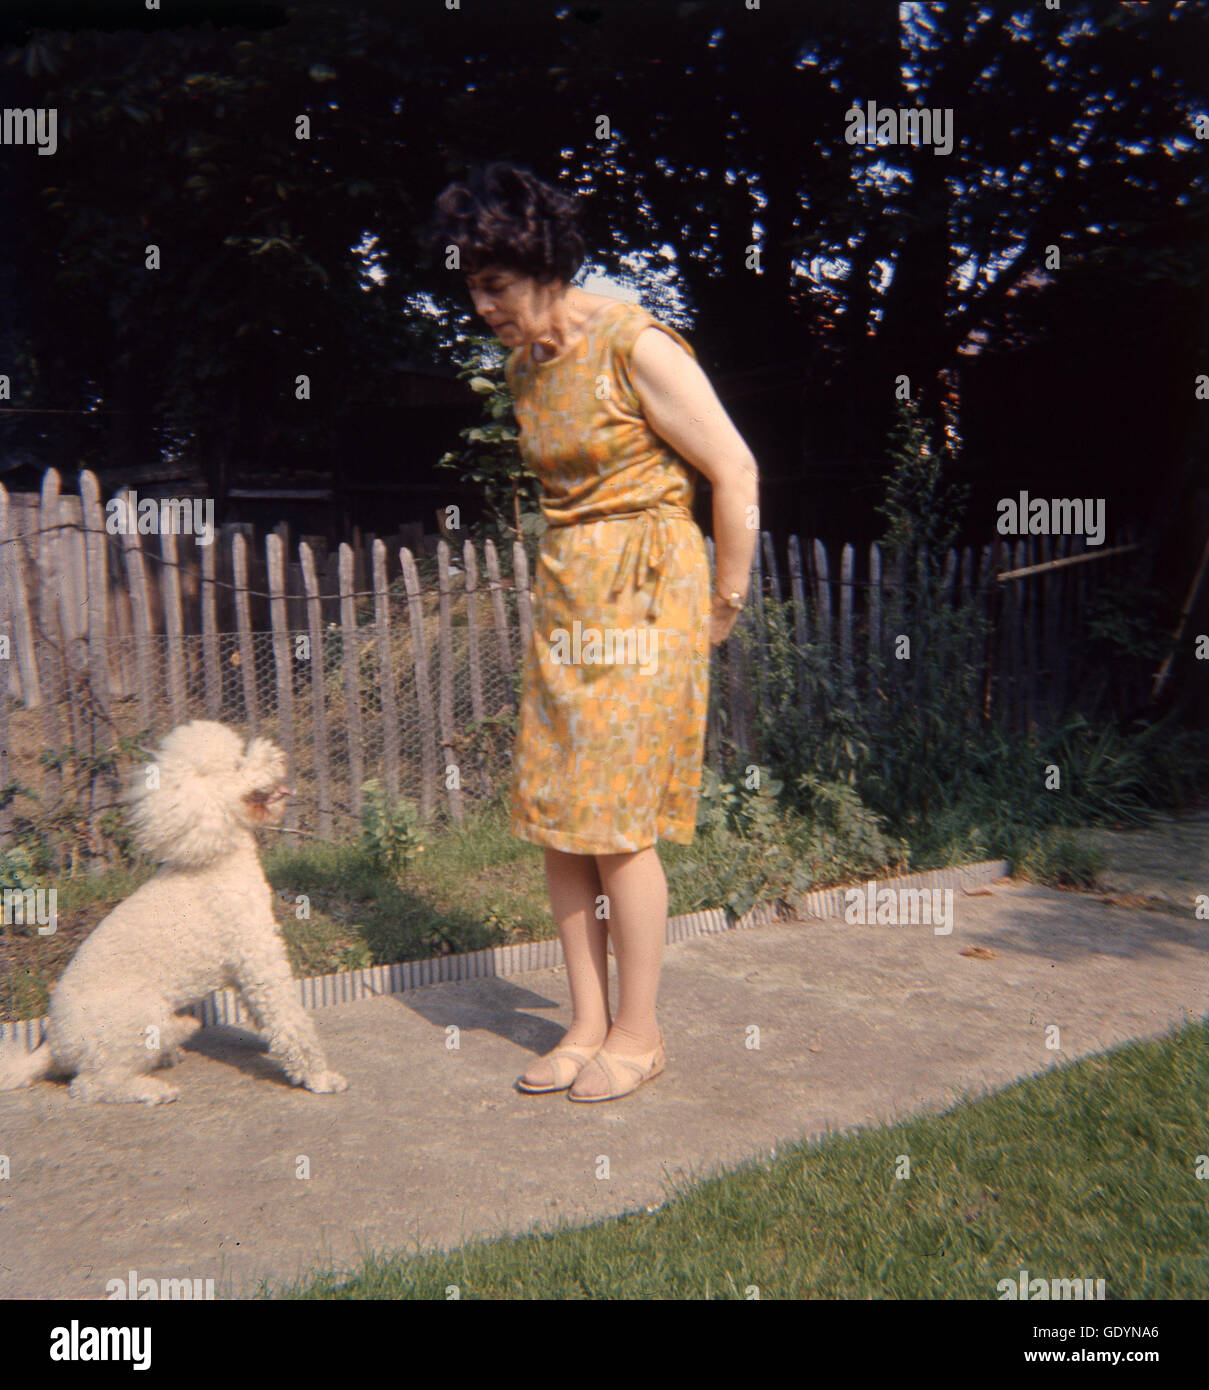 Des années 70, vieille dame sa petite formation enduits crème poodle chien à s'asseoir. Banque D'Images